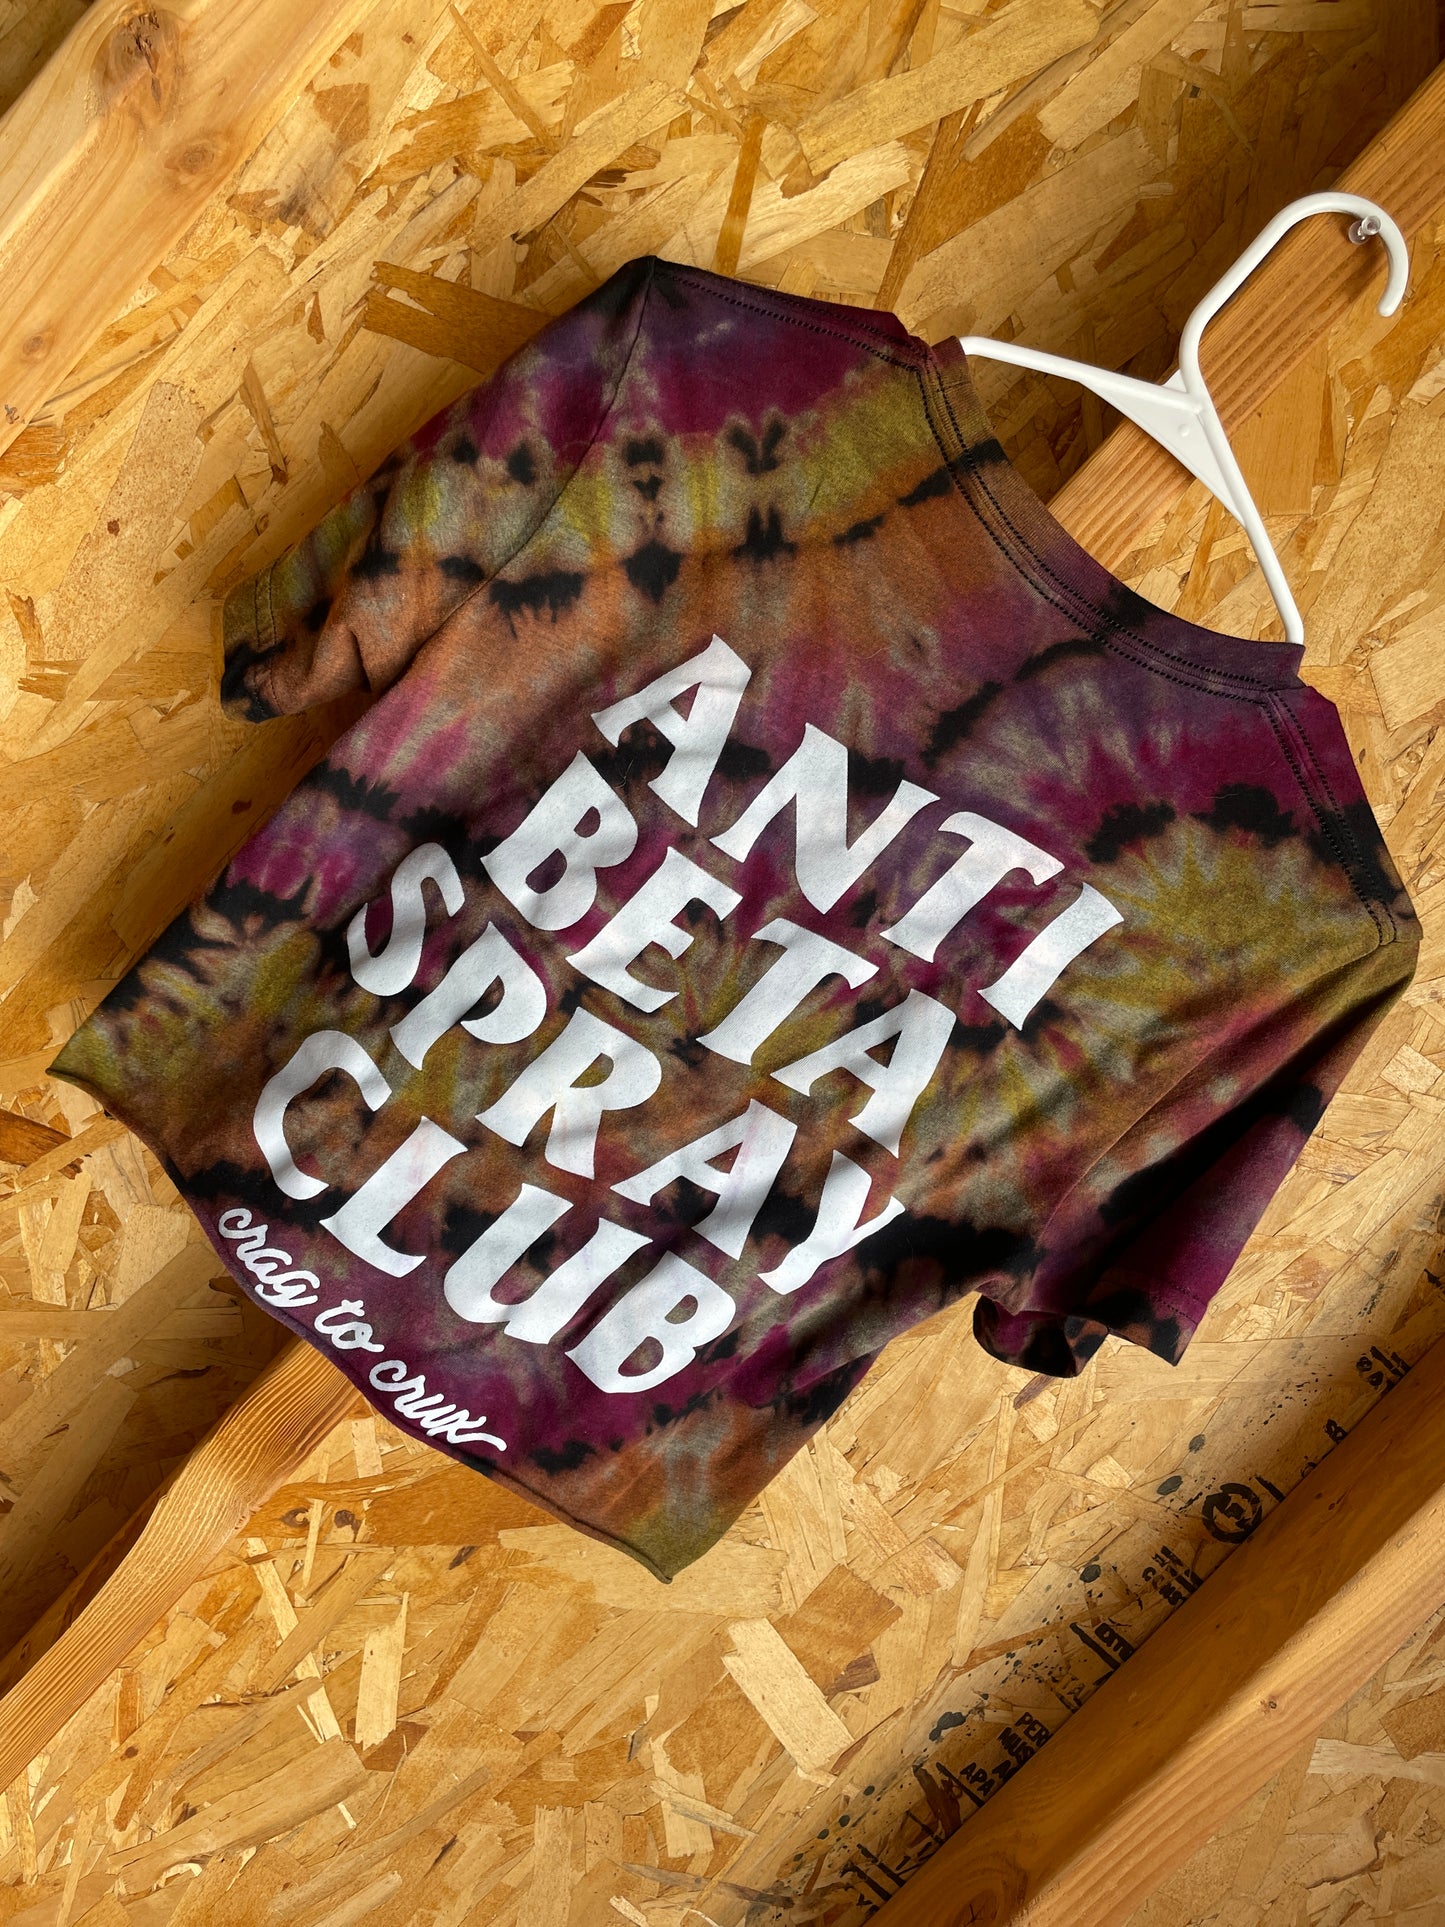 Small Men’s Anti-Beta Spray Club Handmade Tie Dye Crop Top | Black and Pink Pleated Tie Dye Short Sleeve